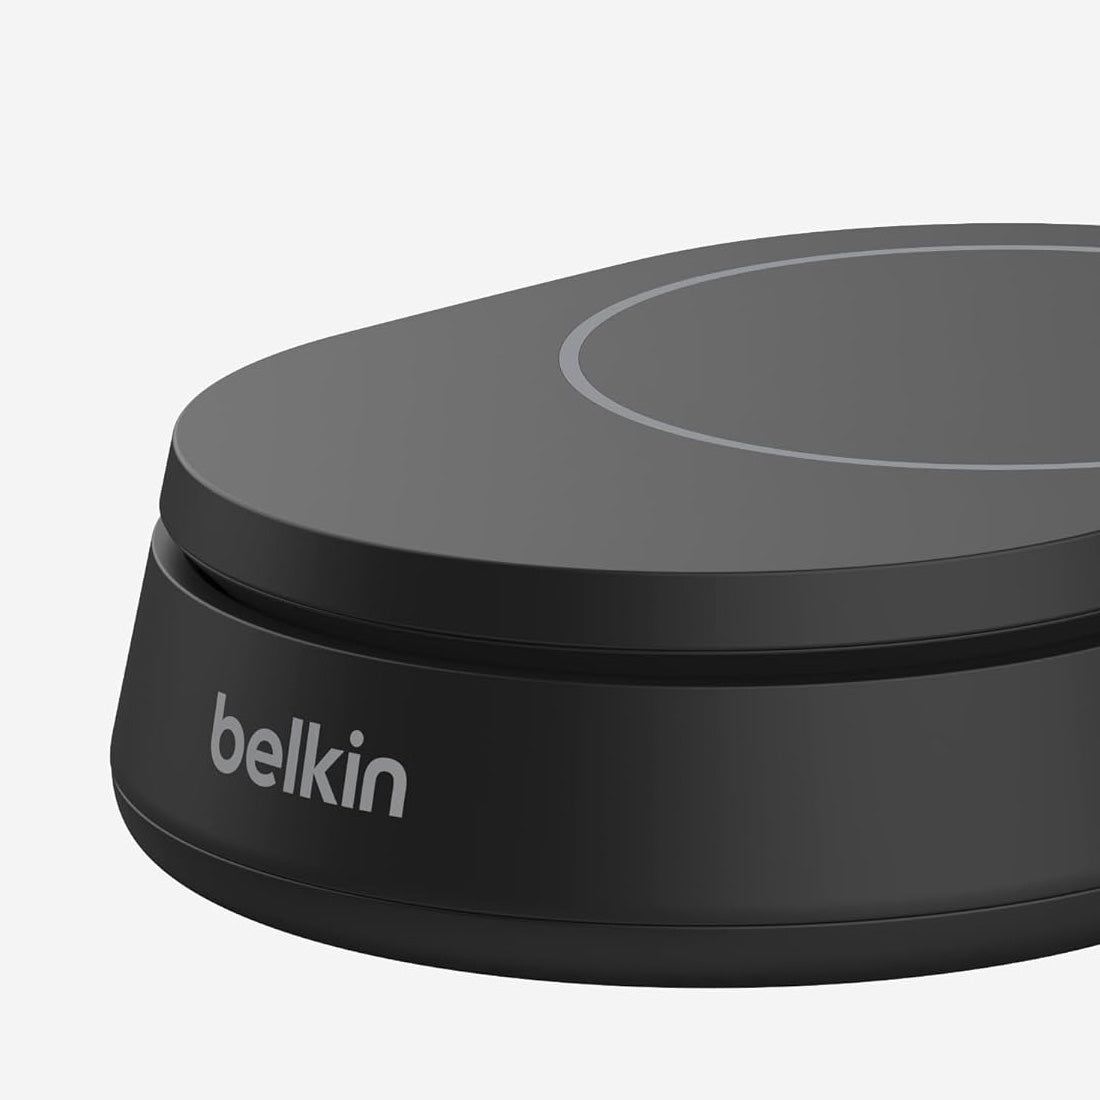 Drahtloses Ladegerät Belkin Boost Pro Convertible Qi2 15W WIA008 für iPhone mit MagSafe (noPSU), Schwarz